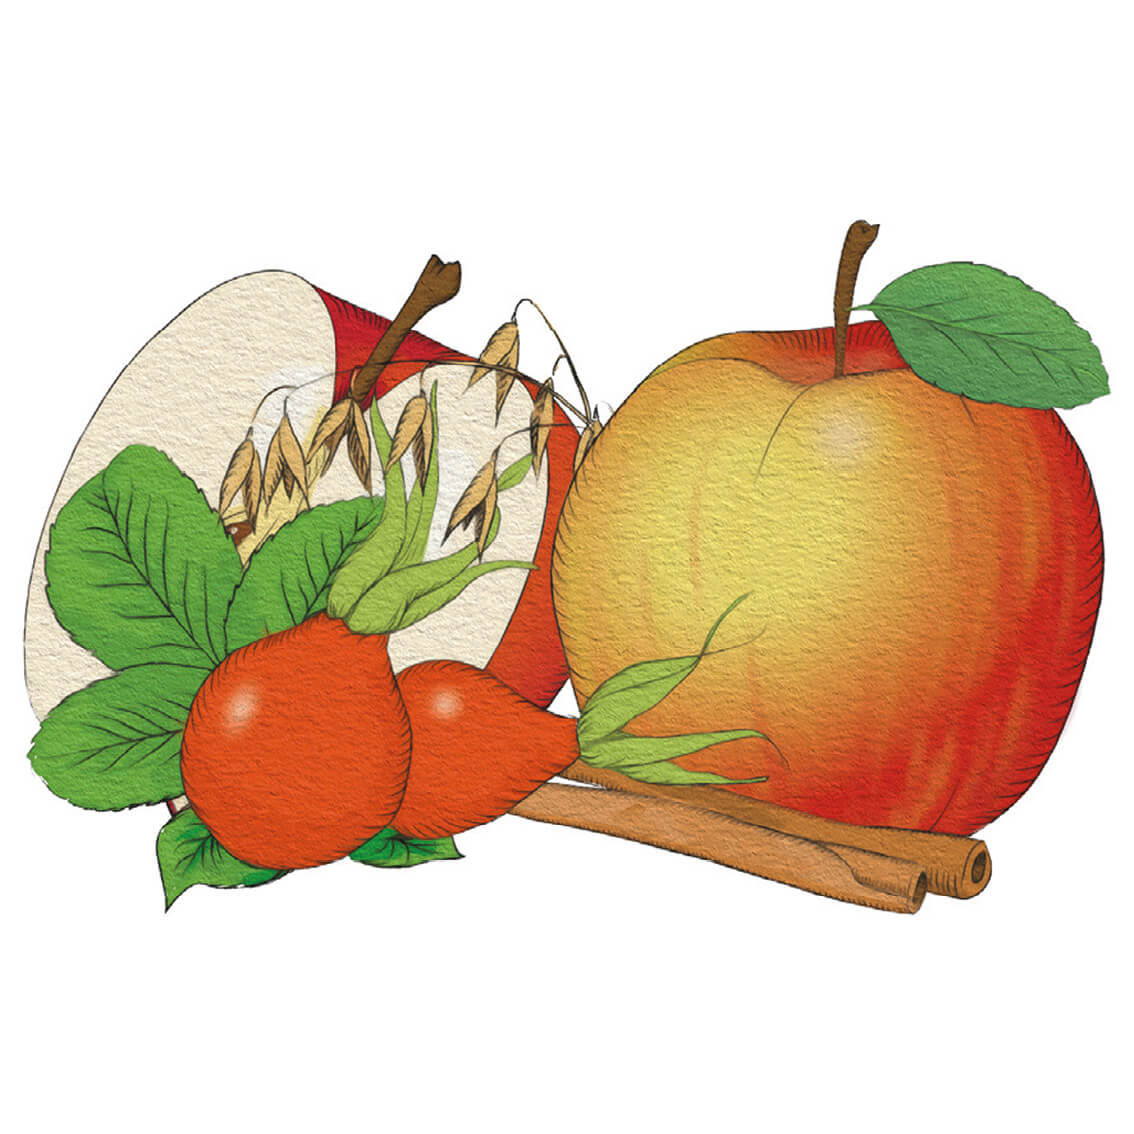 En teckning av en Äpple- & kanelgröt med en kanelstång.